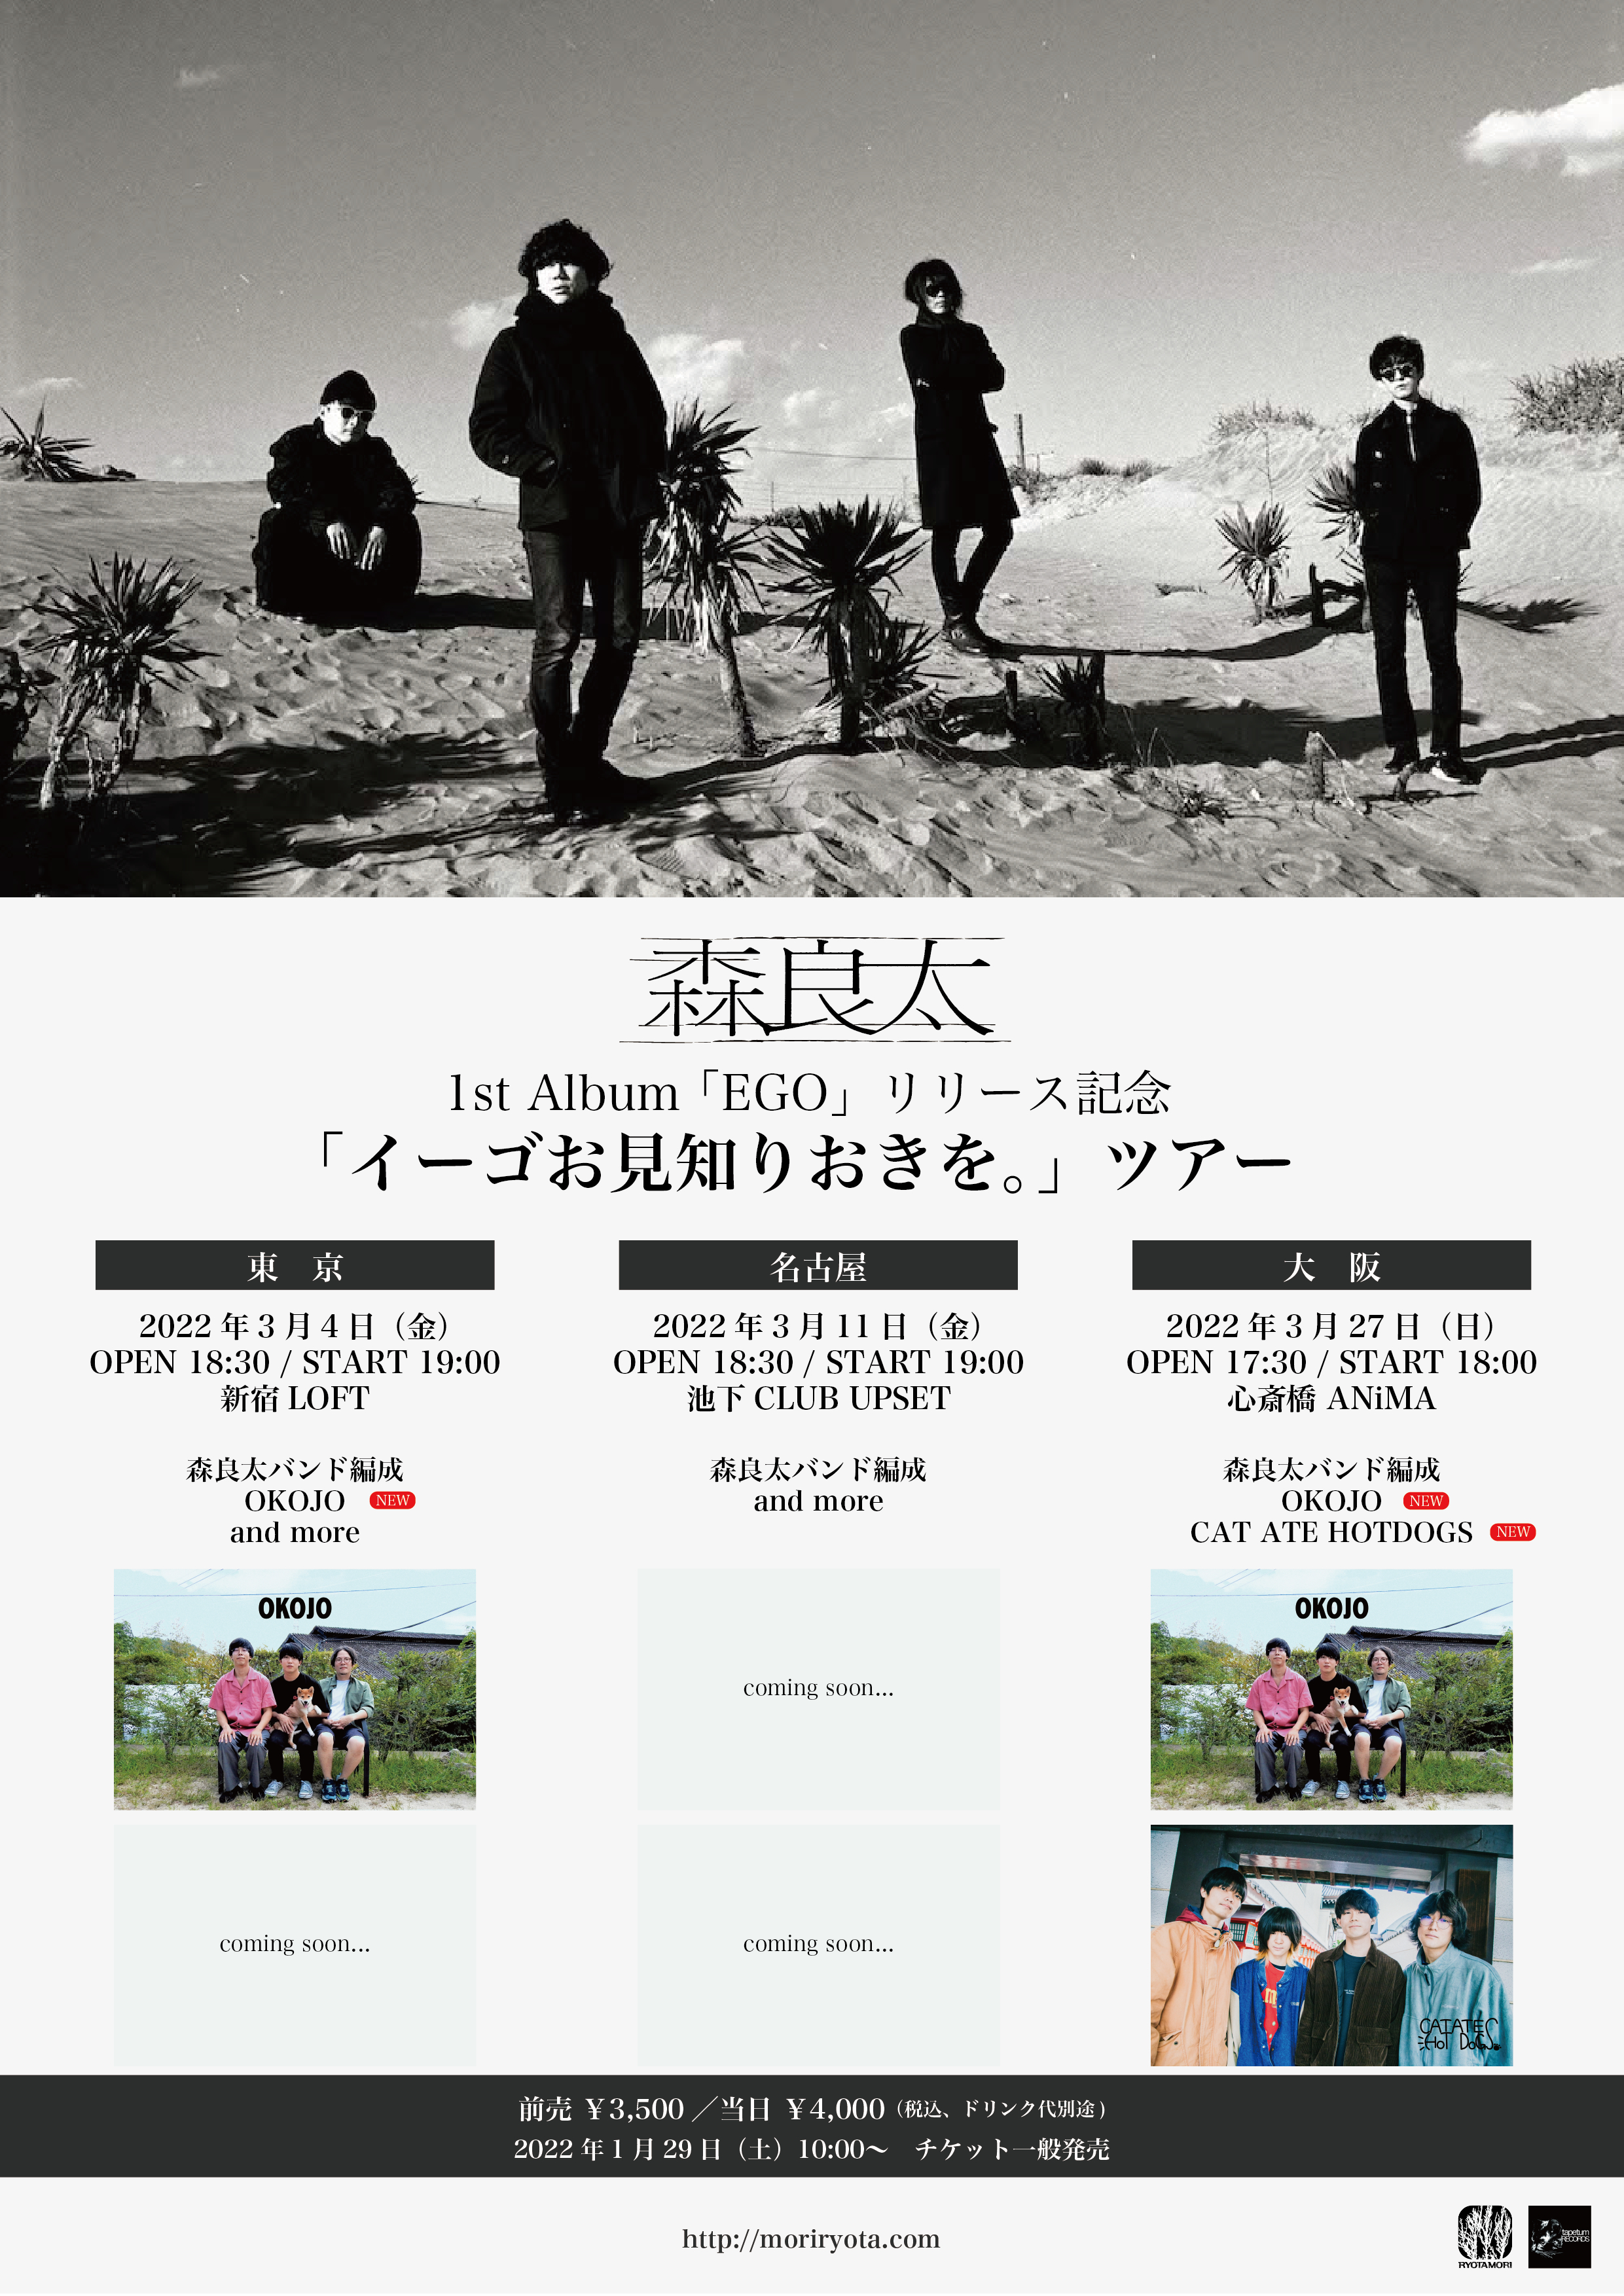 森良太 1st Album『EGO』リリース記念「イーゴお見知りおきを。」ツアー